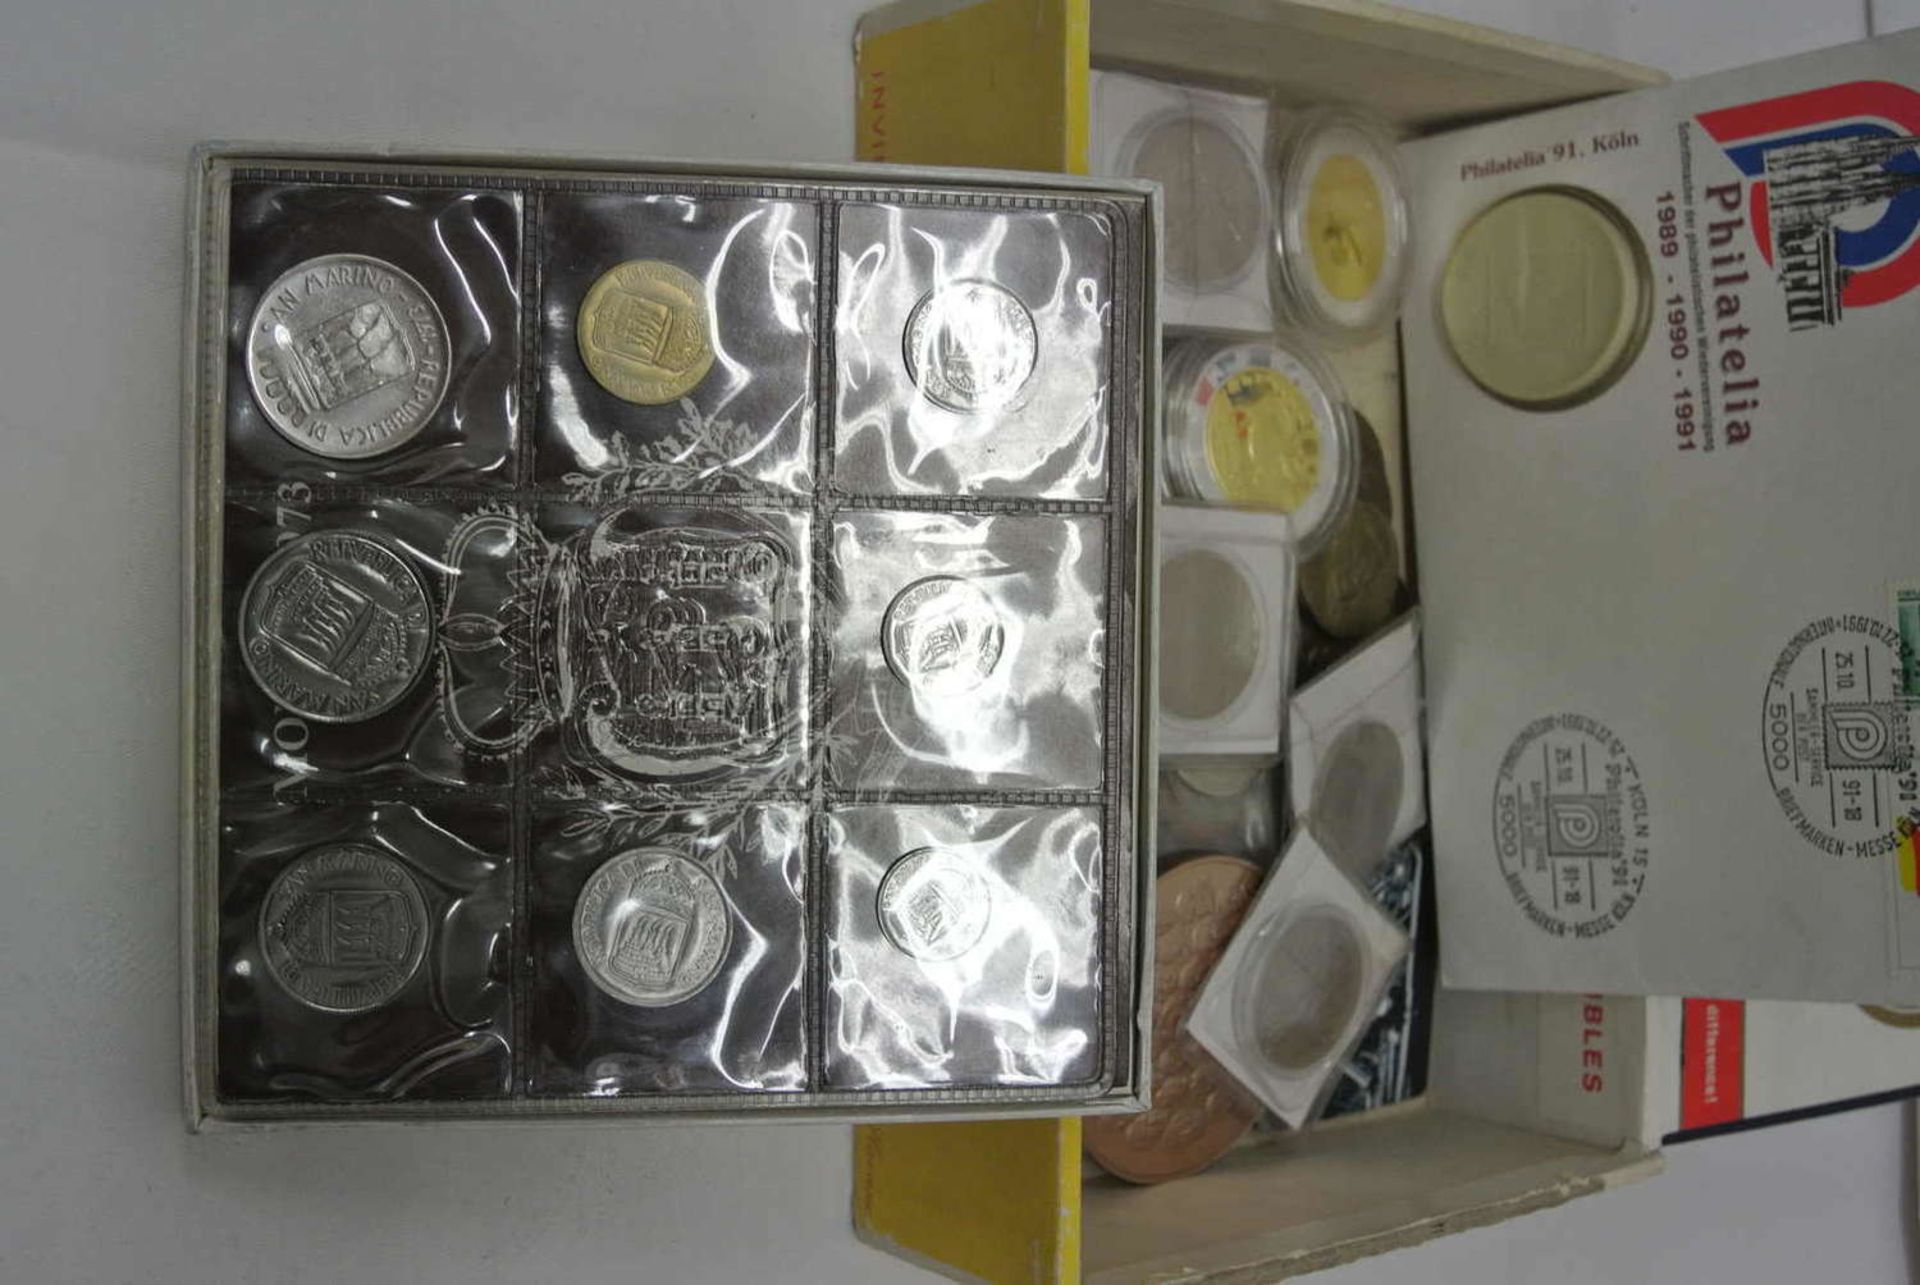 Schachtel mit Medaillen und Münzen, dabei z.B, 5 Medaillen China, Kursmünzsatz San Marino, 5